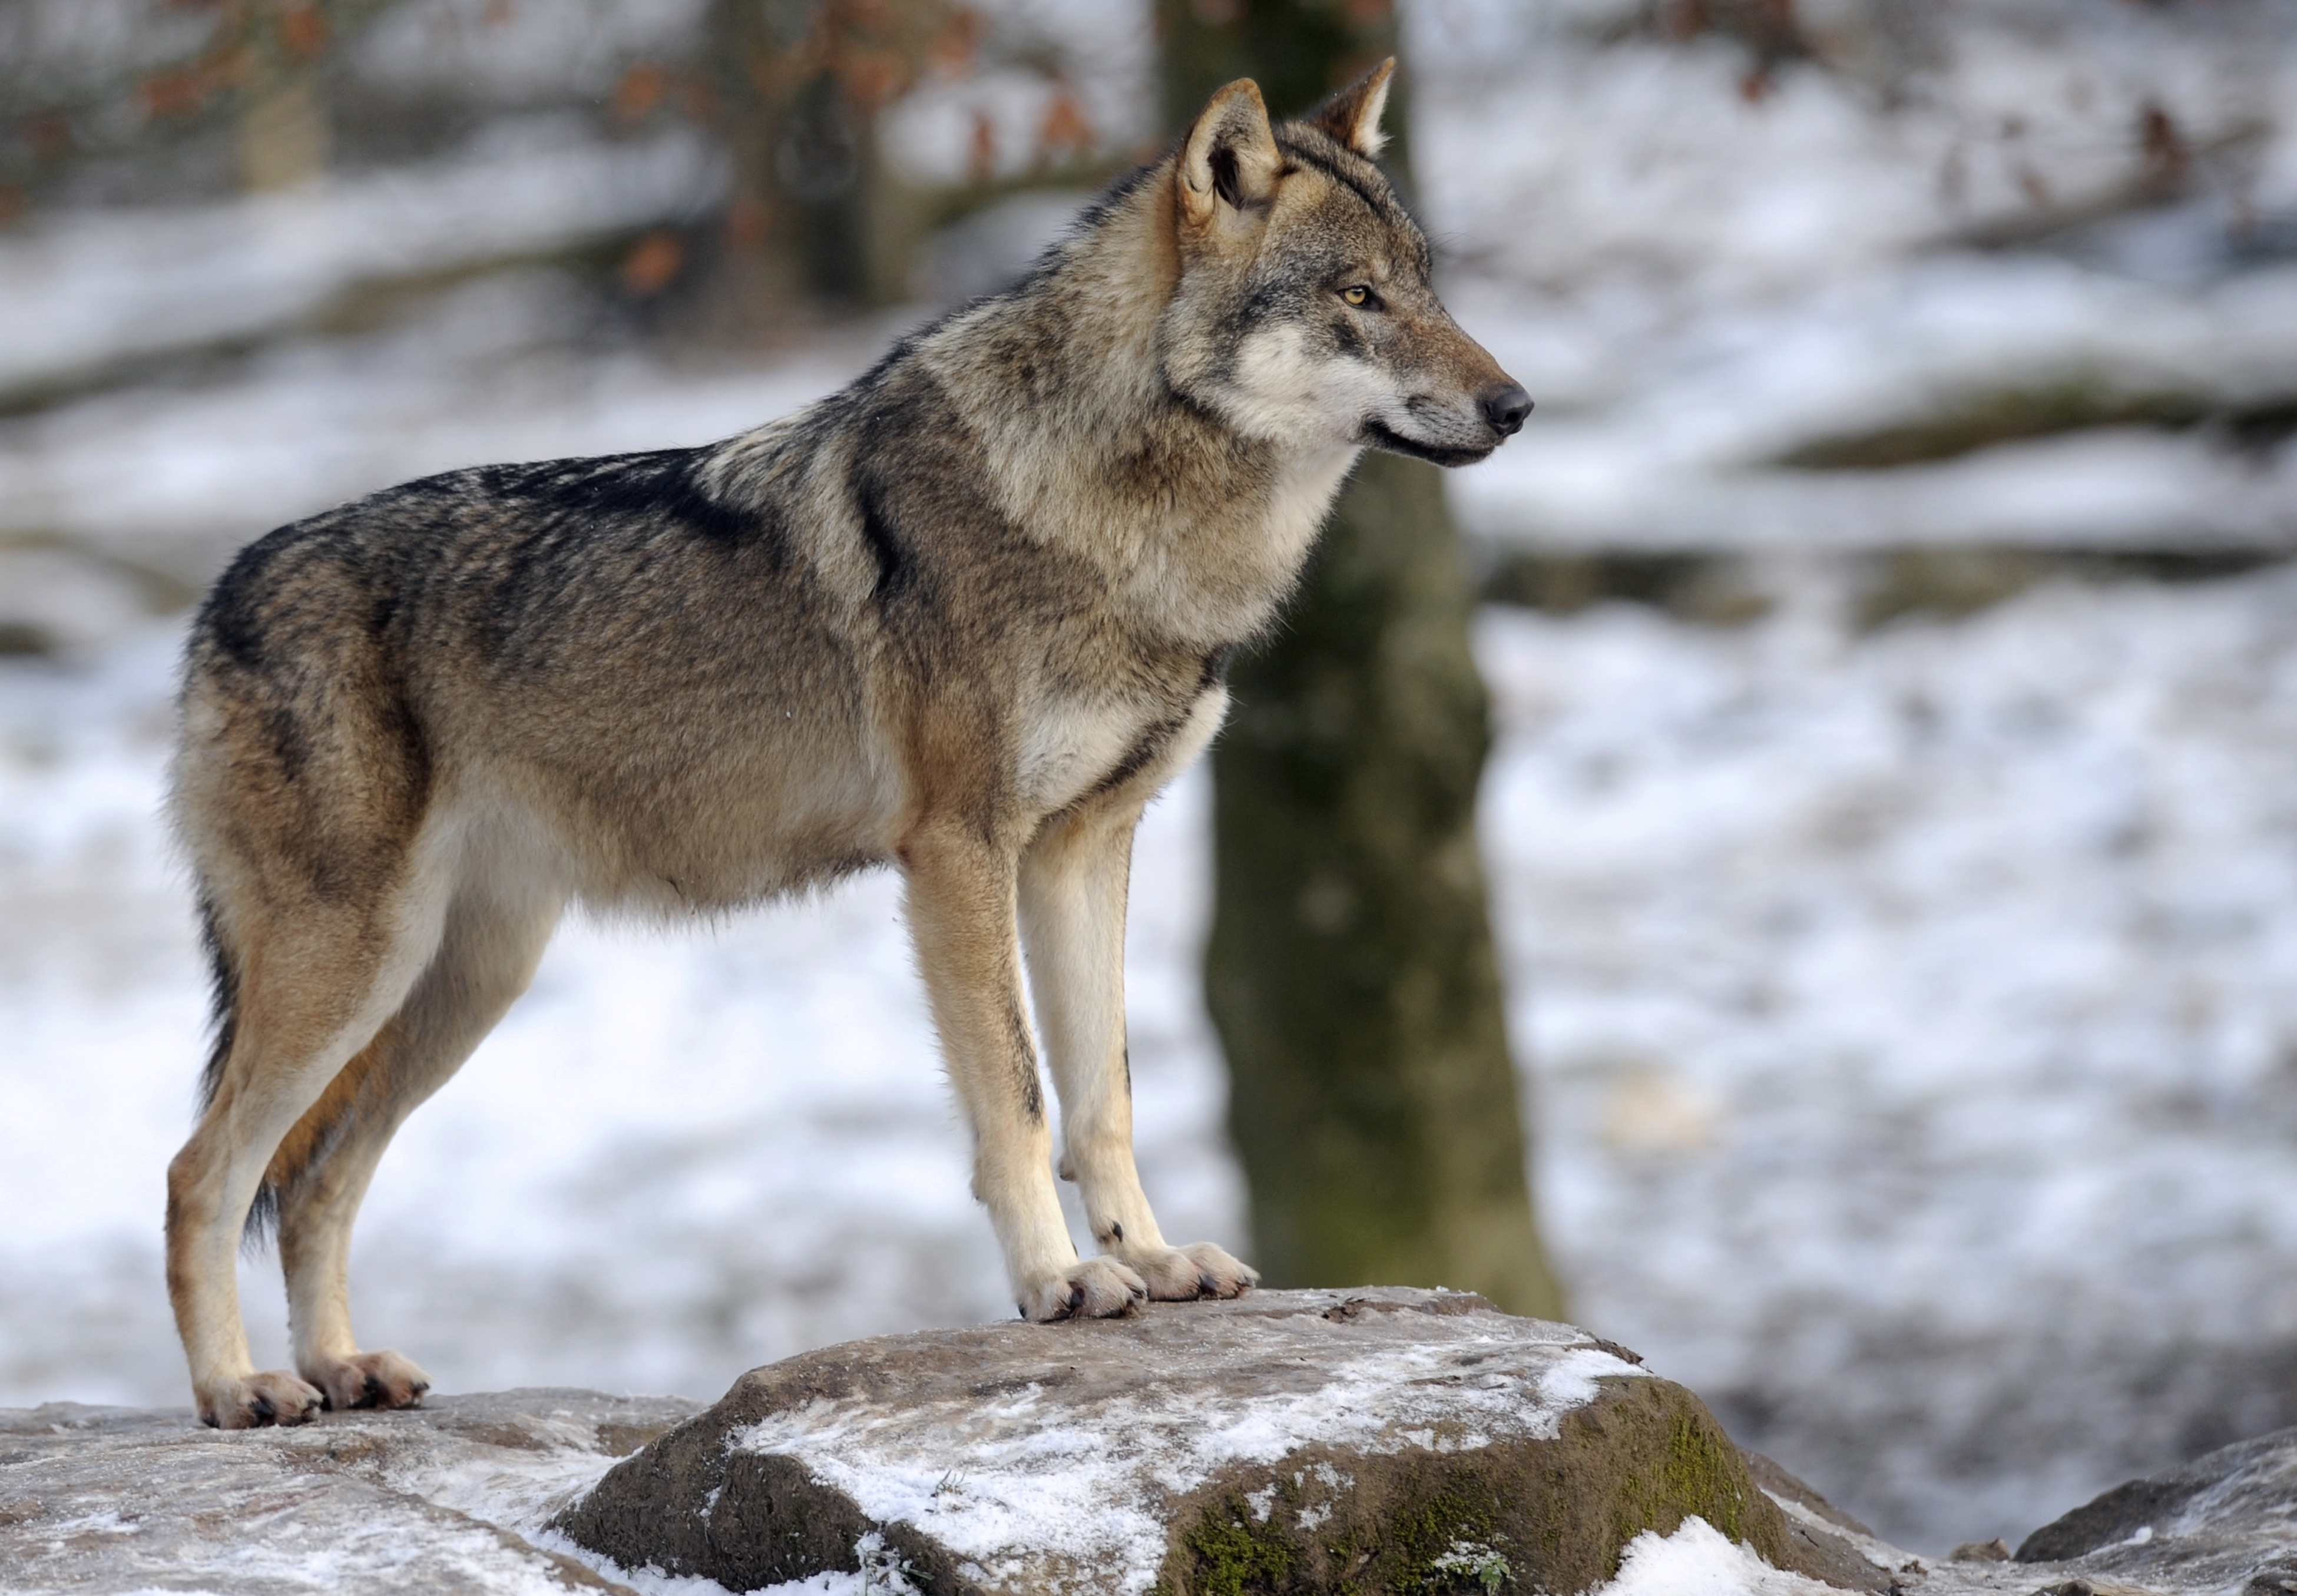 R wolf. Волк canis Lupus. Canis Lupus Campestris. Тундровый волк. Волк серый обыкновенный.